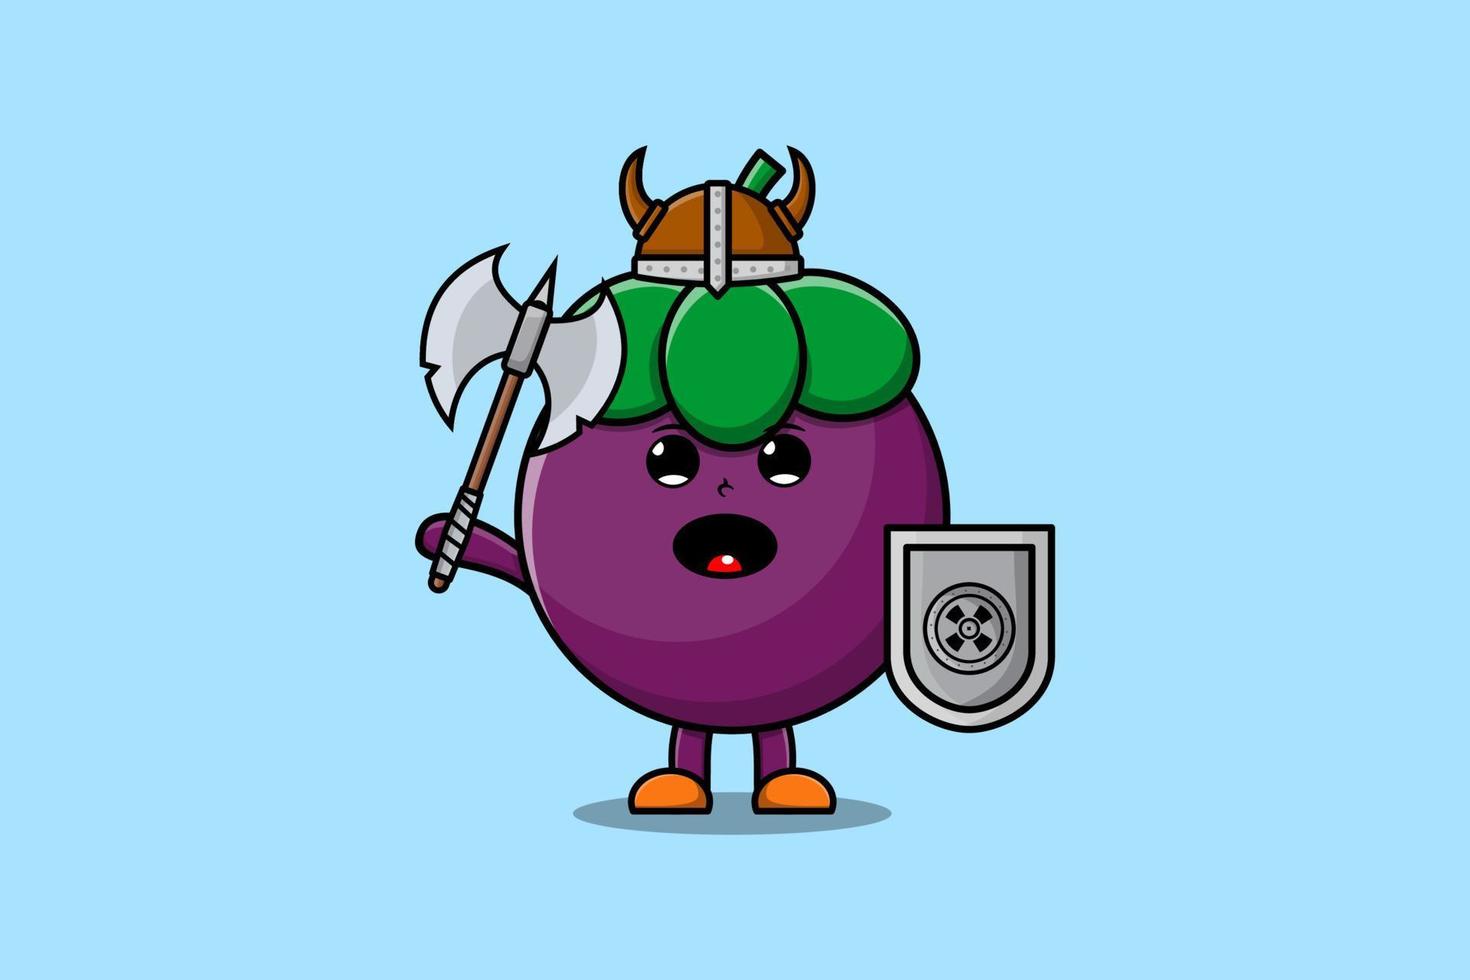 personnage de dessin animé mignon mangoustan pirate viking avec chapeau et tenant une hache et un bouclier vecteur